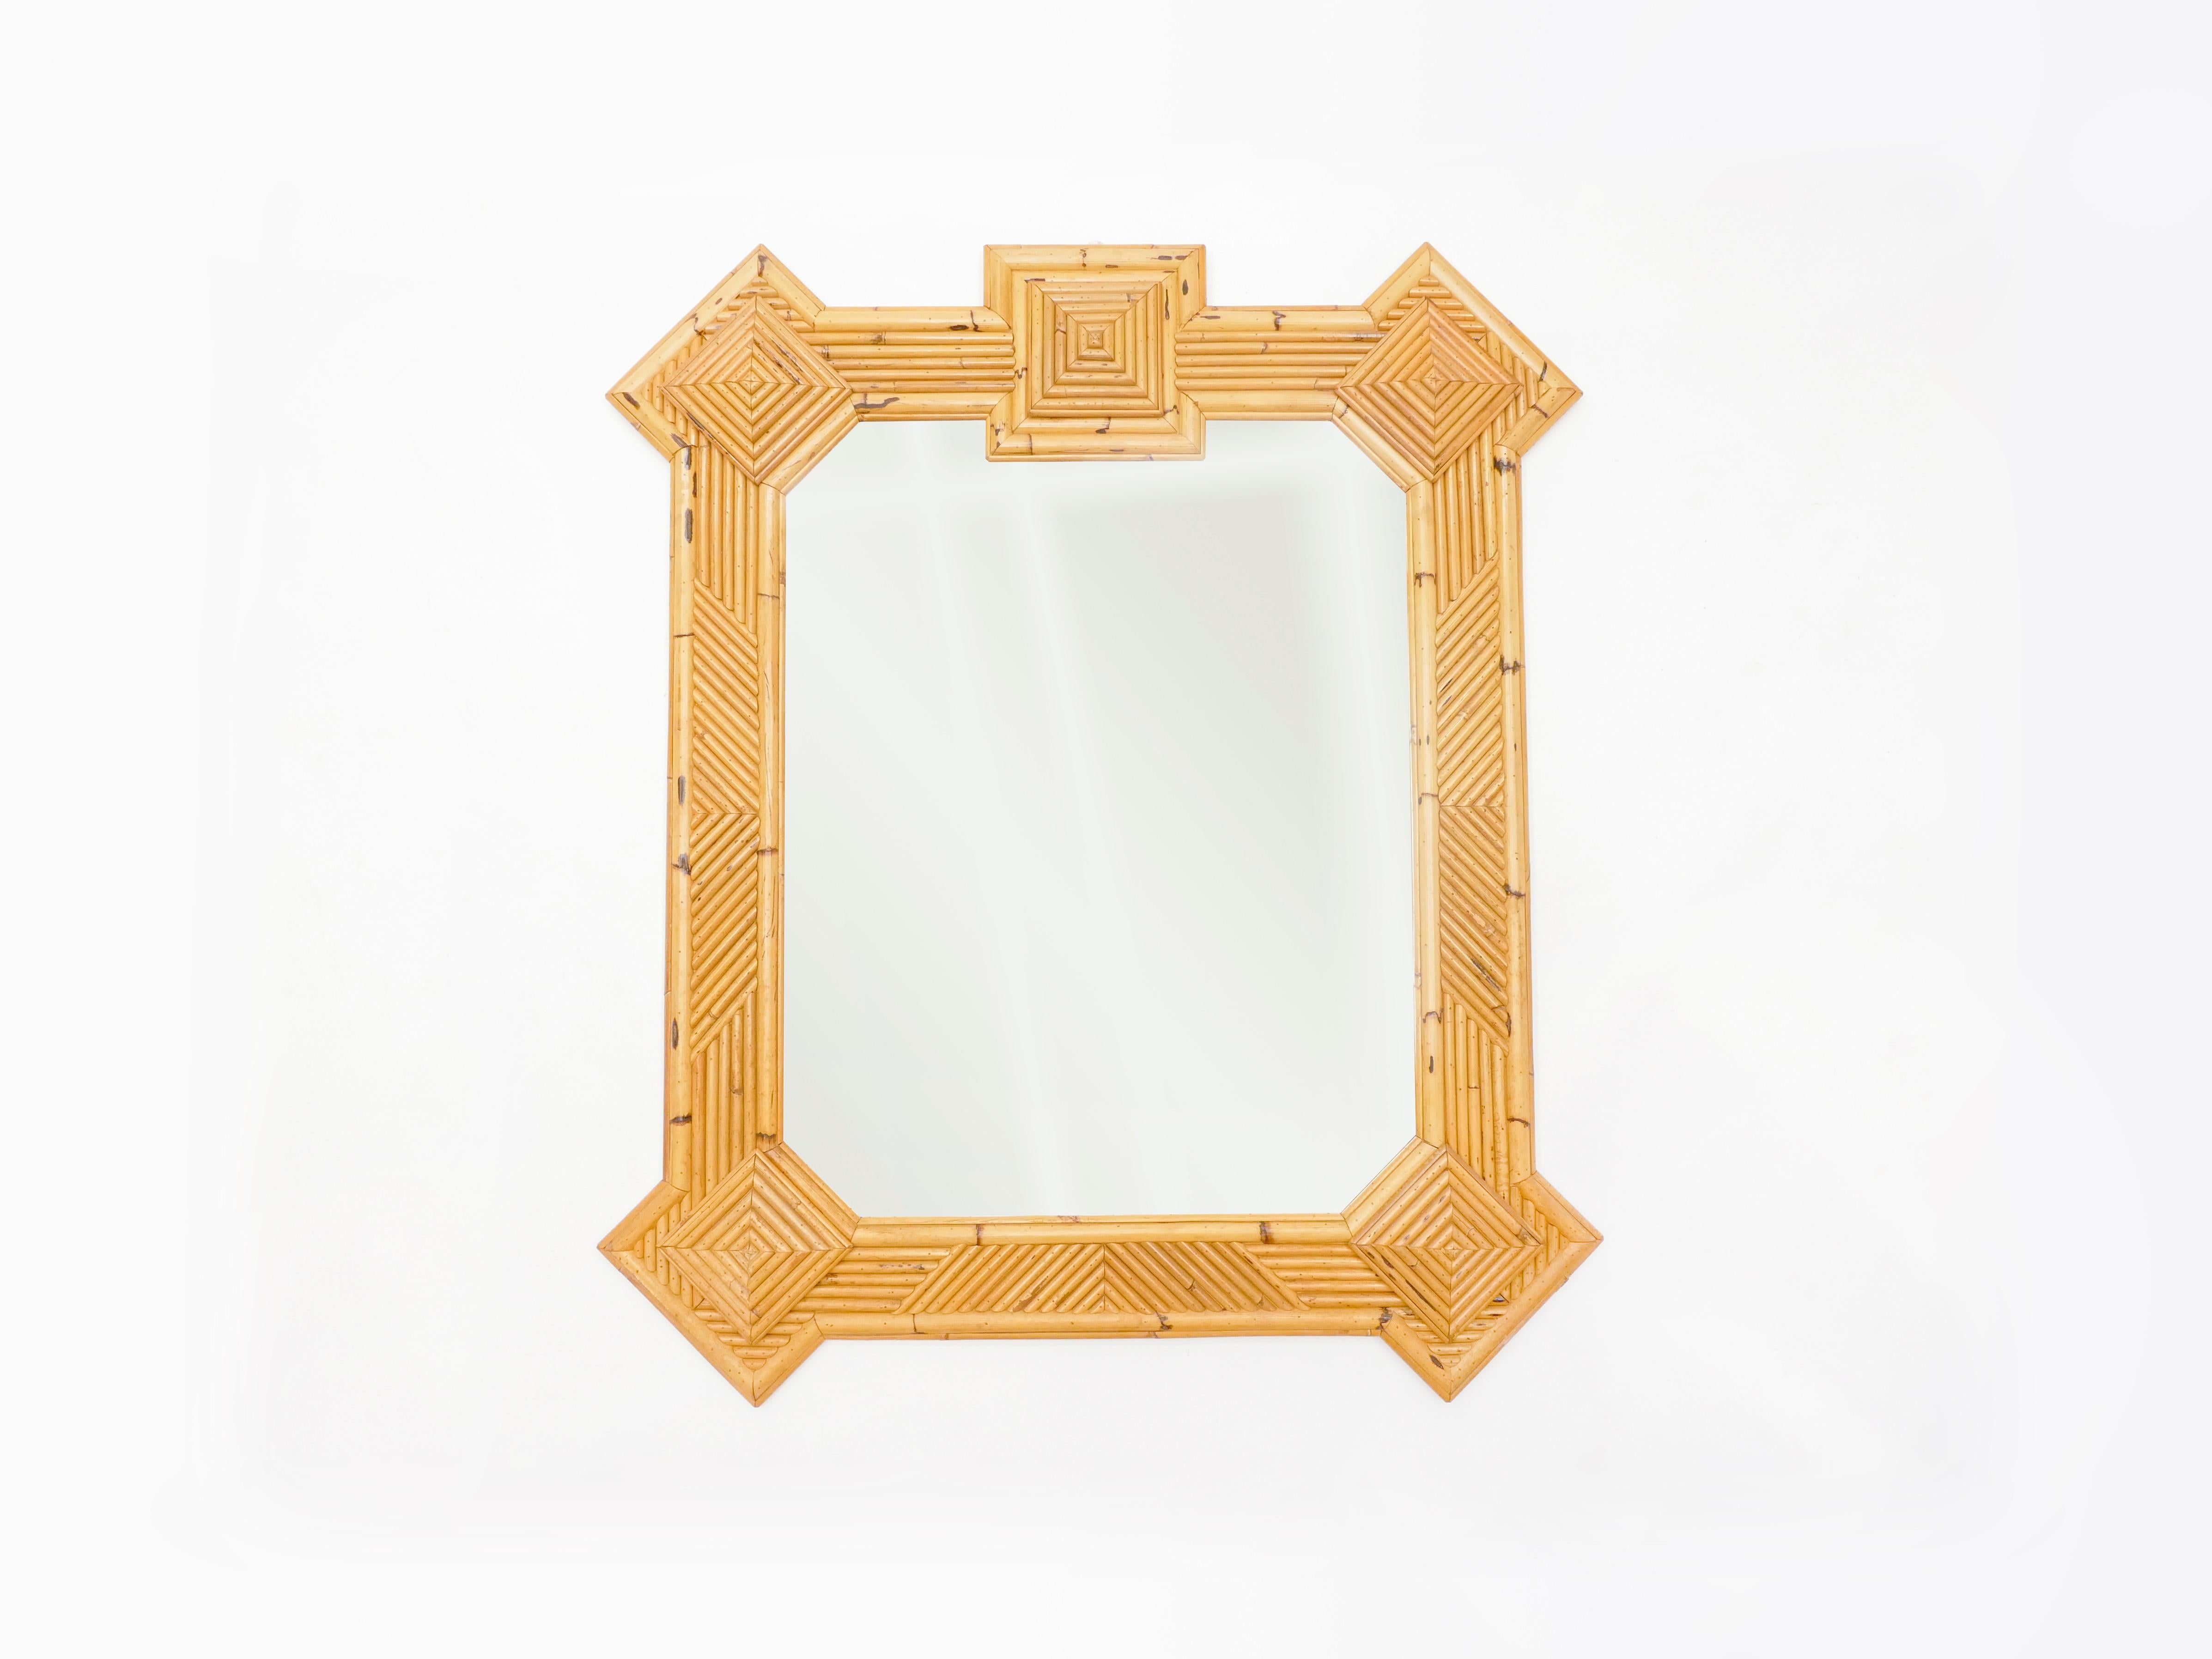 Dieser übergroße Spiegel wurde Anfang der 1970er Jahre von Maurizio Mariani für Vivai Del Sud in Rom entworfen. Es ist eine Mischung aus Rattan, Bambus und Rohr aus Indien, die diesen dekorativen Rahmen zu einem einzigartigen und schönen